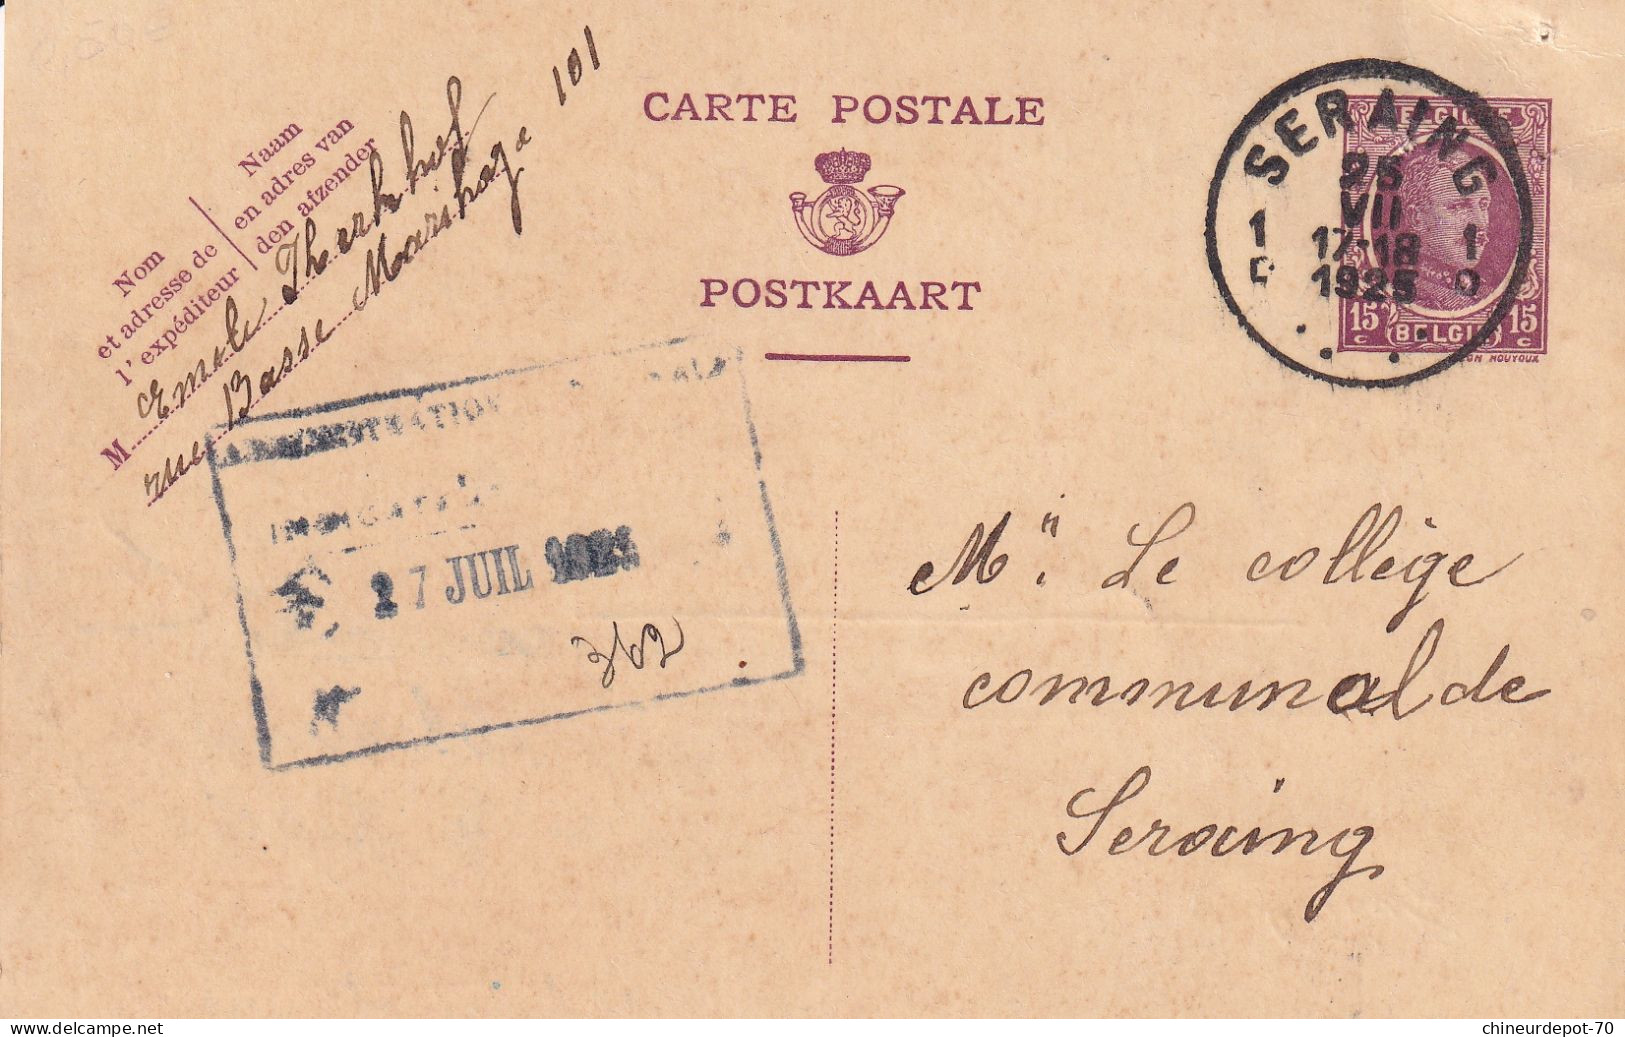 Lettres & Documents  Belgique België Belgium  Seraing  1925 - Storia Postale